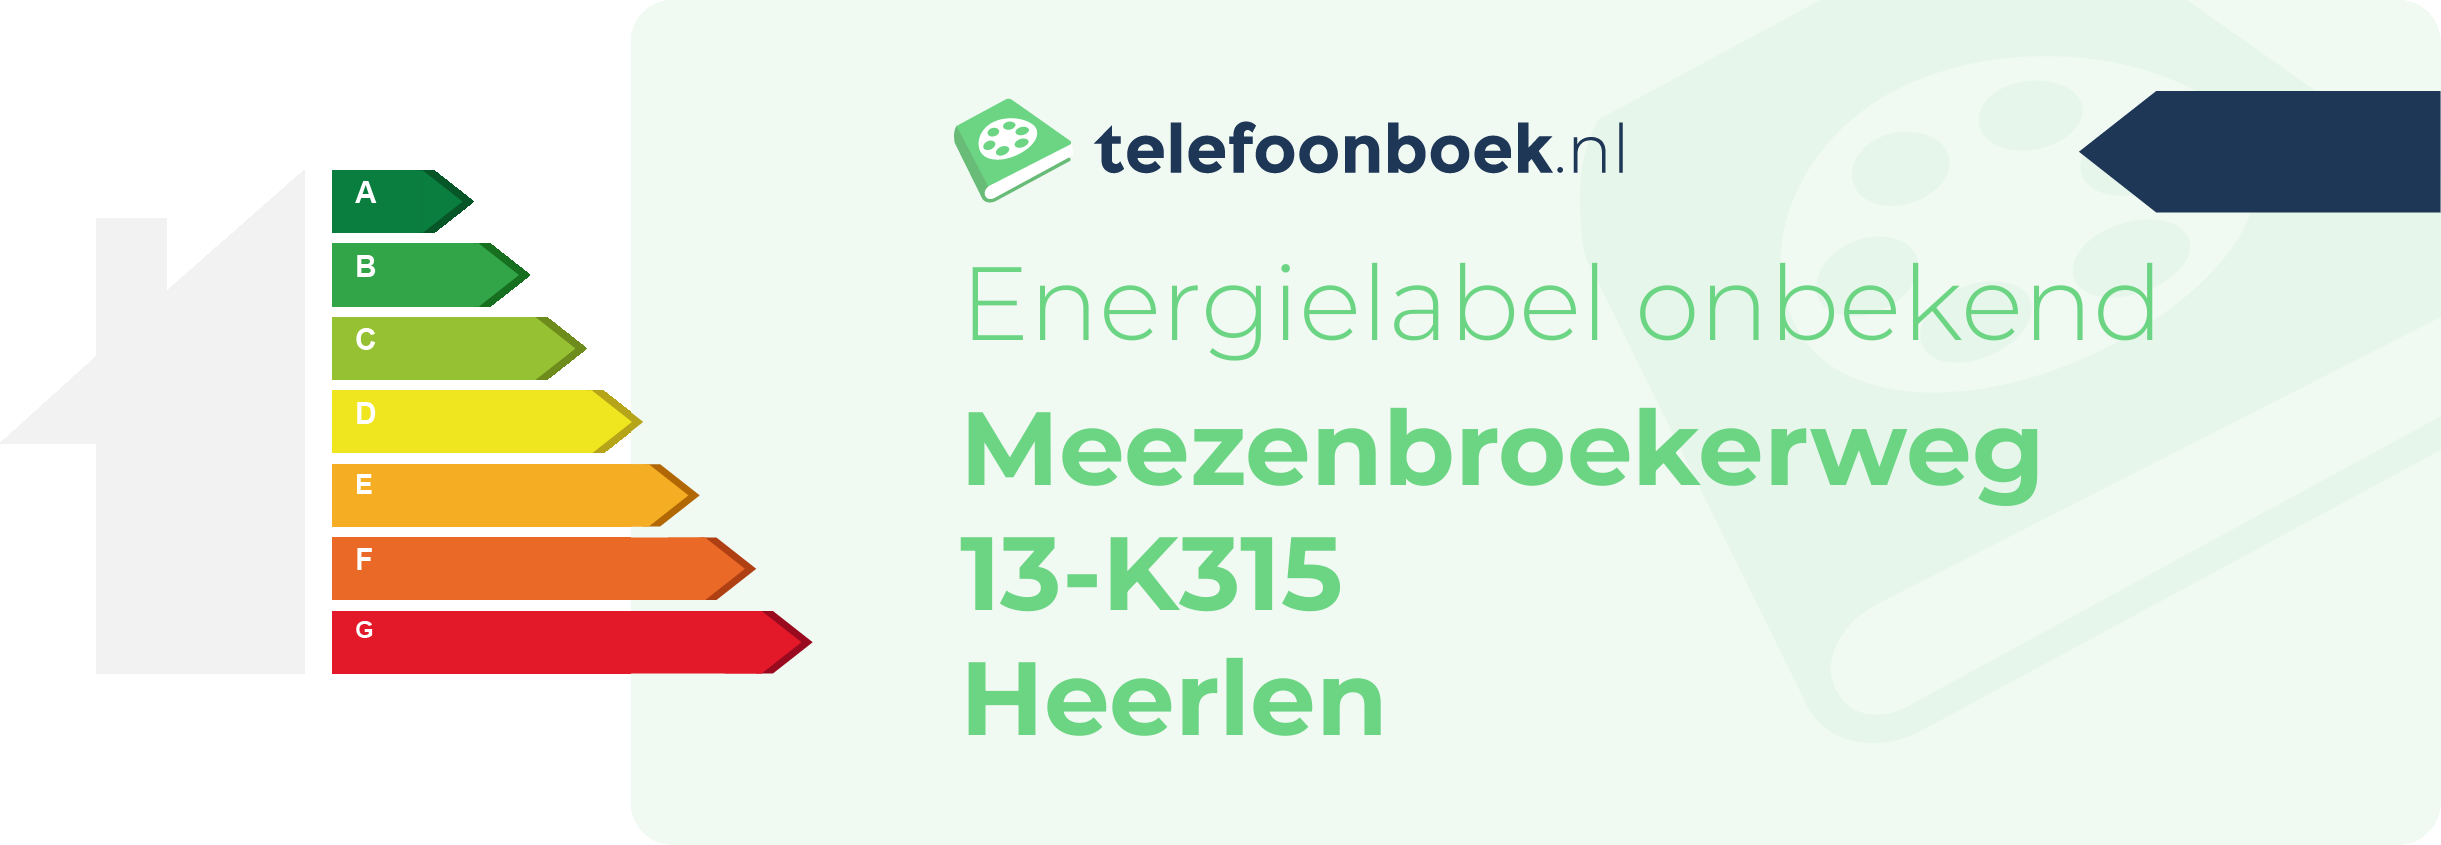 Energielabel Meezenbroekerweg 13-K315 Heerlen